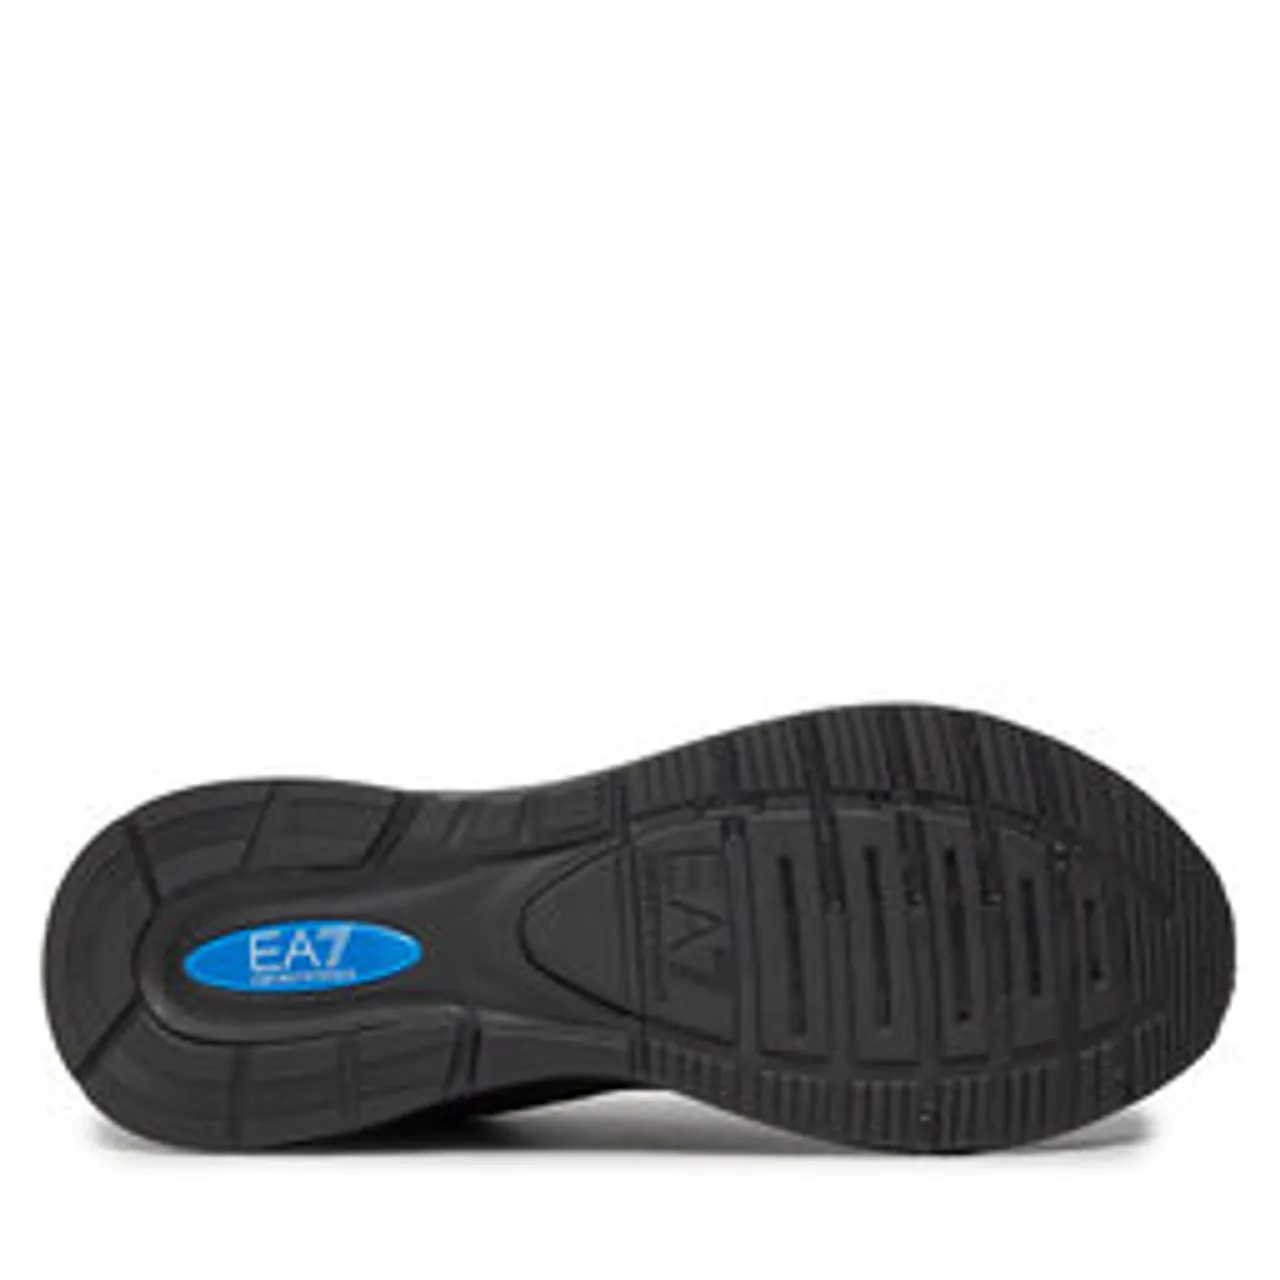 Sneakers EA7 Emporio Armani X8X130 XK309 R313 Triple Black+Gunmeta